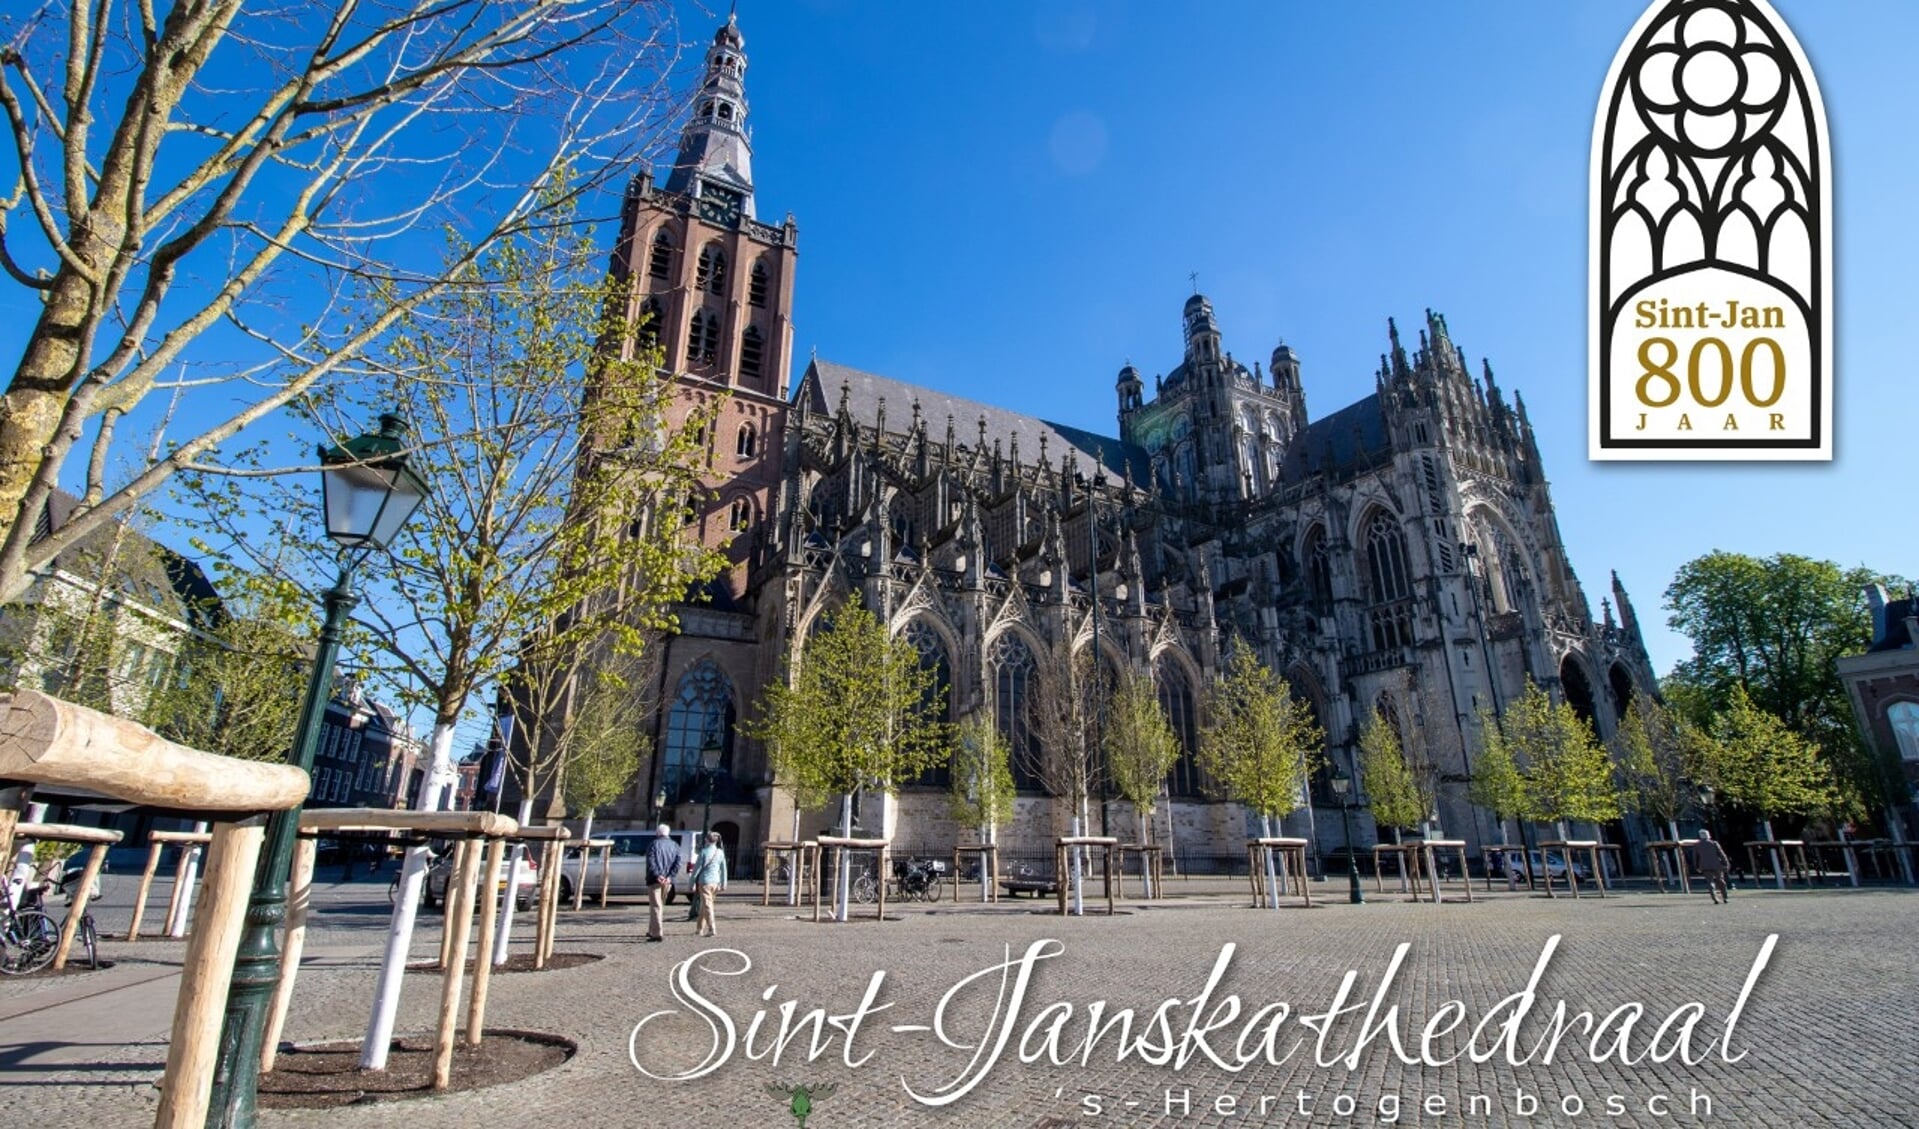 Op zaterdag 21 mei viert het bisdom ‘Sint-Jan 800 jaar’ met een vertegenwoordiging van de andere kathedralen en basilieken in Nederland.